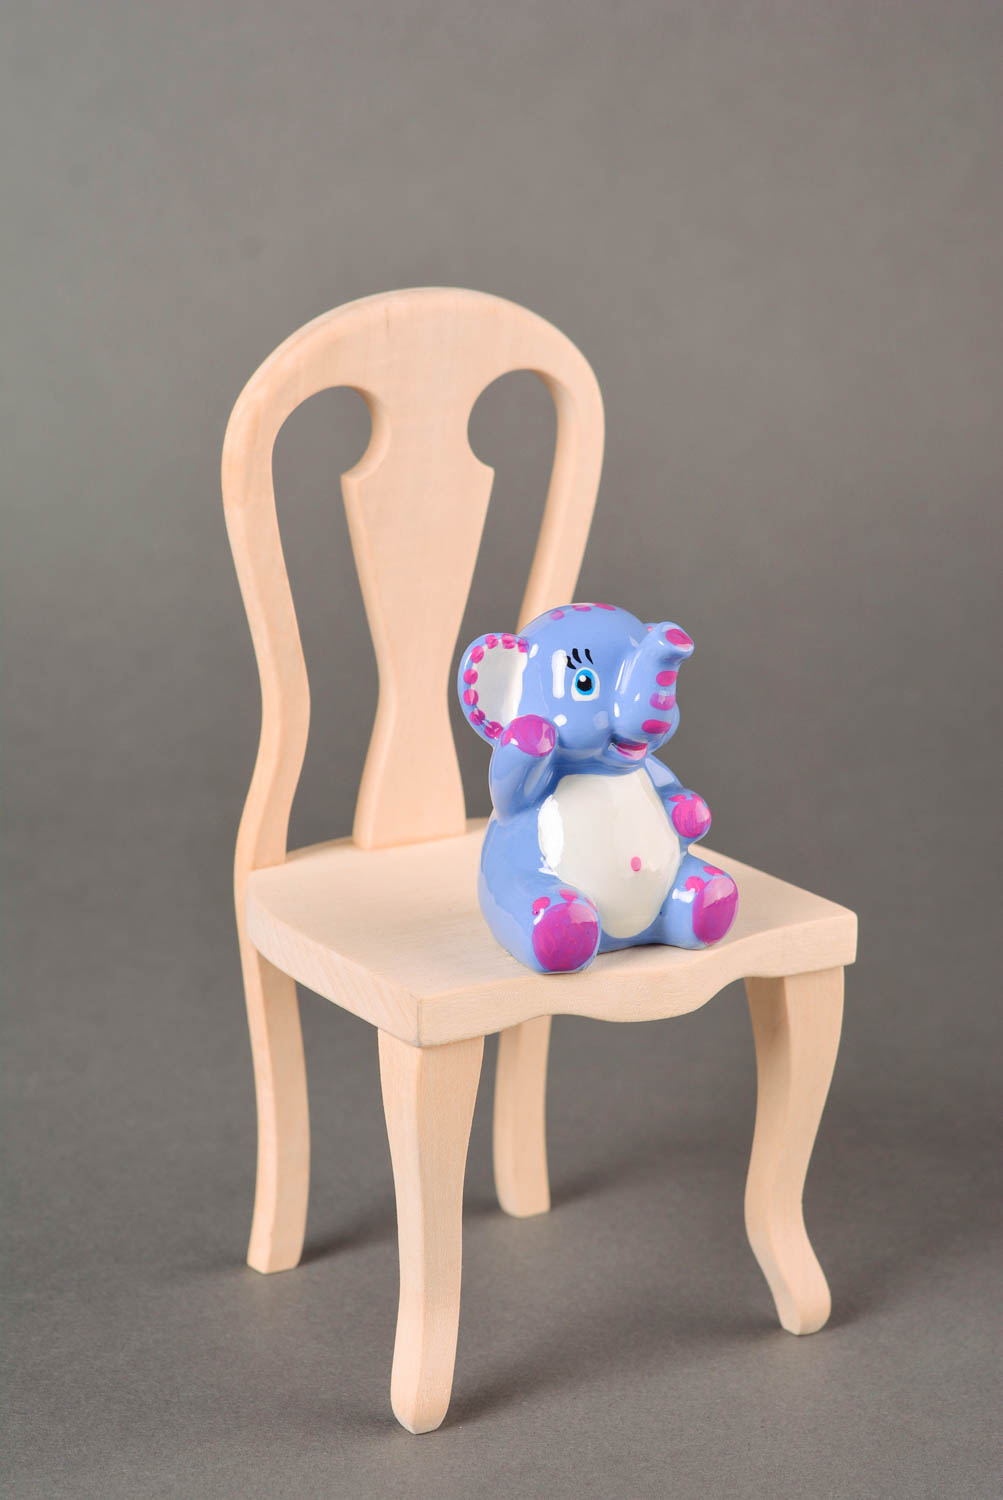 Handgefertigt Gips Figur Dekoidee Wohnzimmer Kinder Geschenk in Blau Elefant foto 1